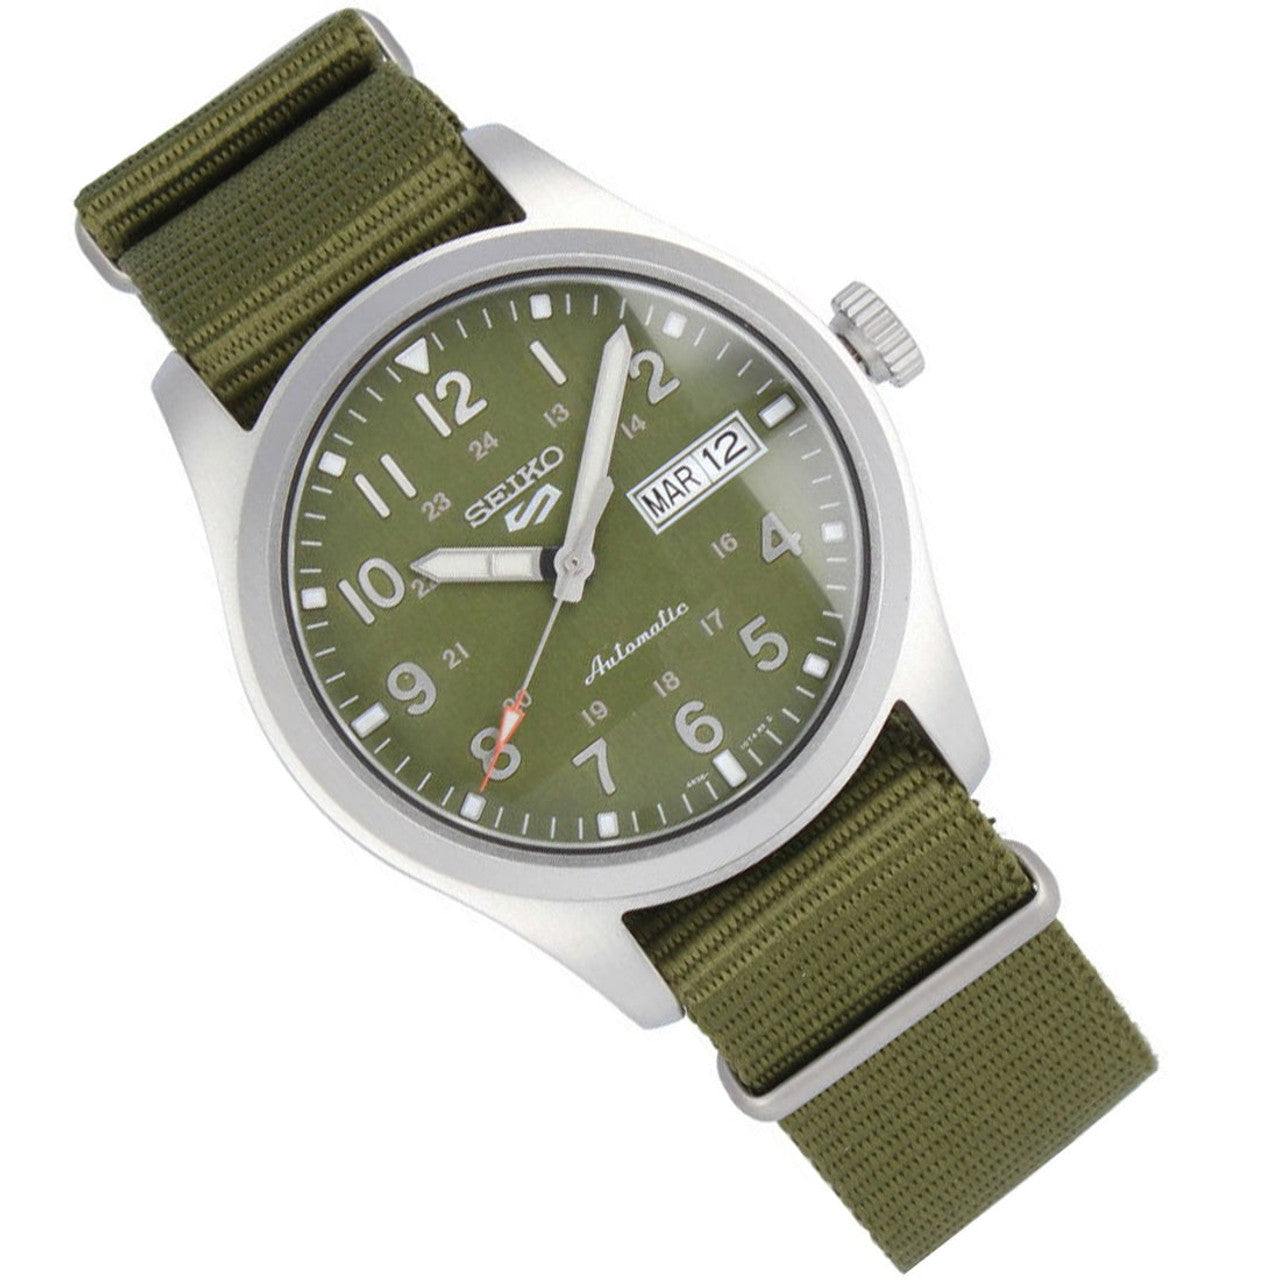 Seiko 5 SRPG33K1 Sports Field Green Nylon Strap Men's Watch - mzwatcheslk srilanka